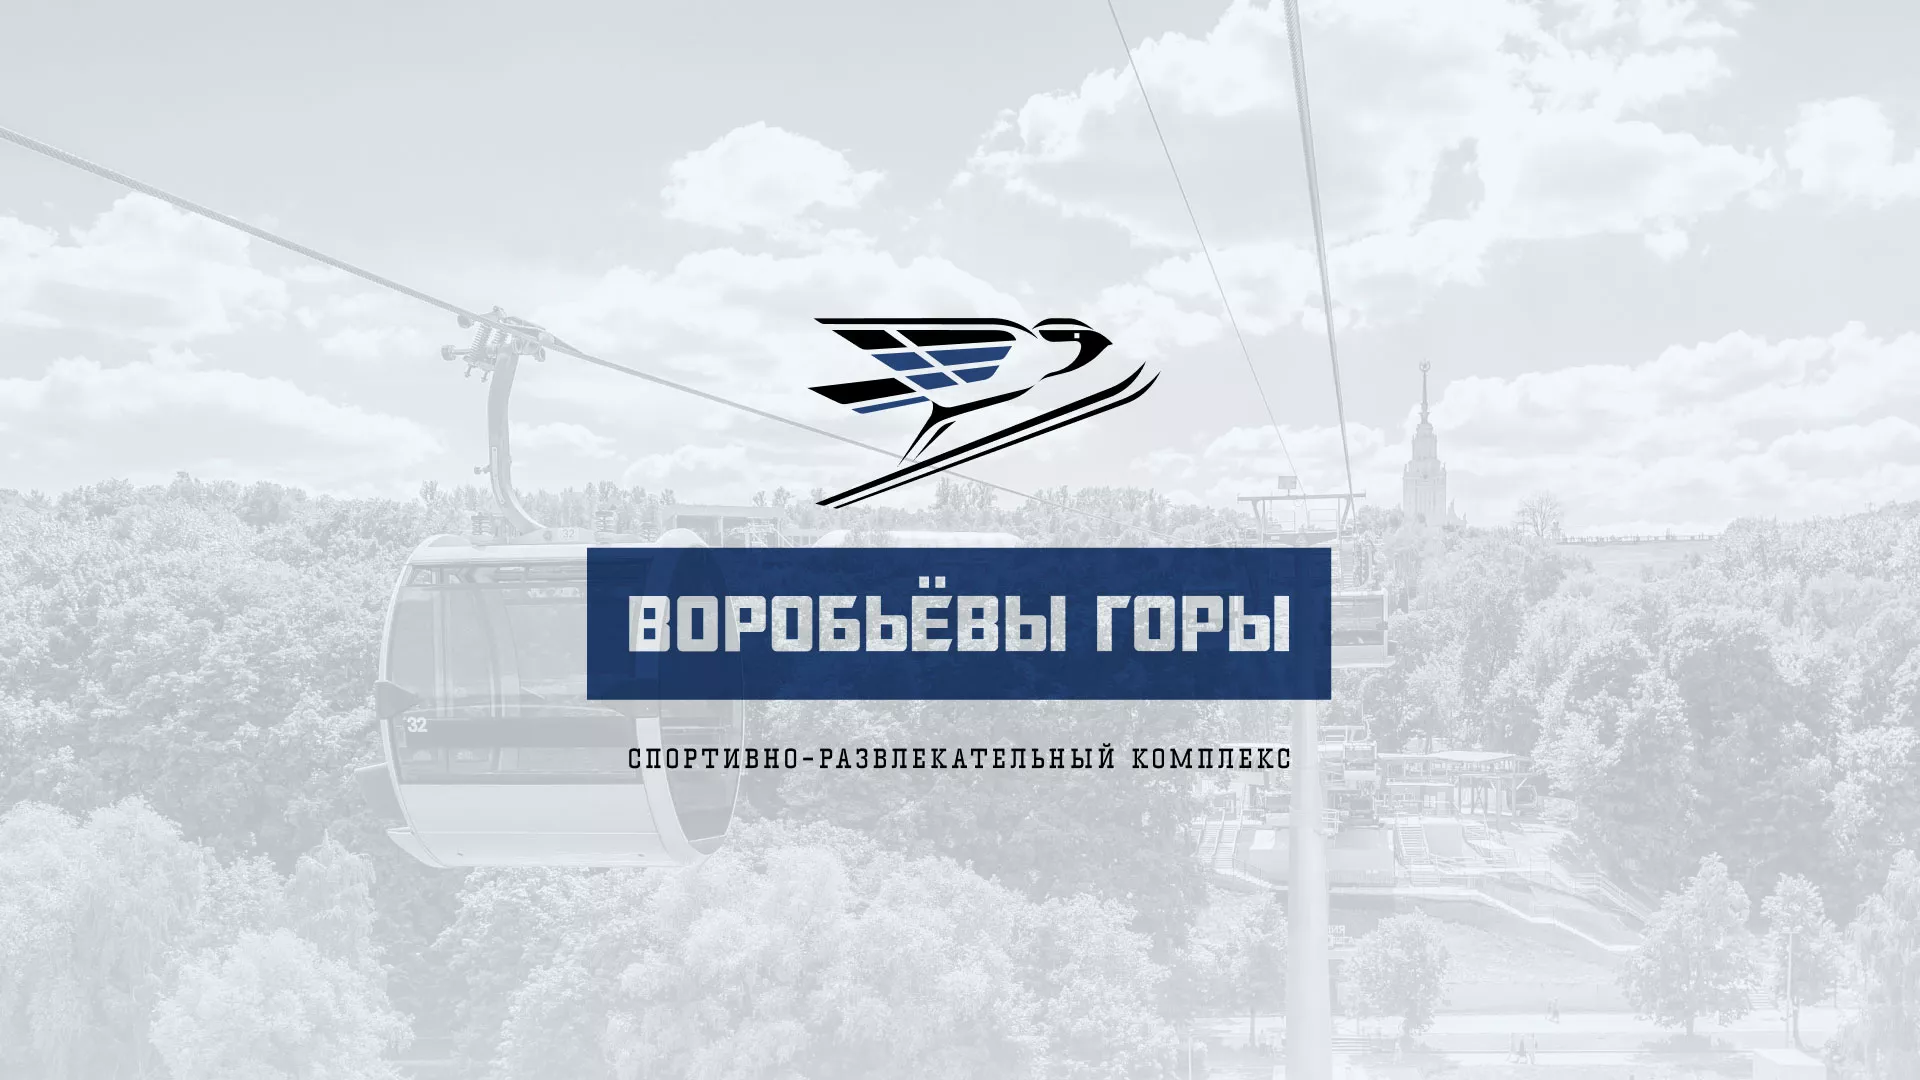 Разработка сайта в Кологриве для спортивно-развлекательного комплекса «Воробьёвы горы»